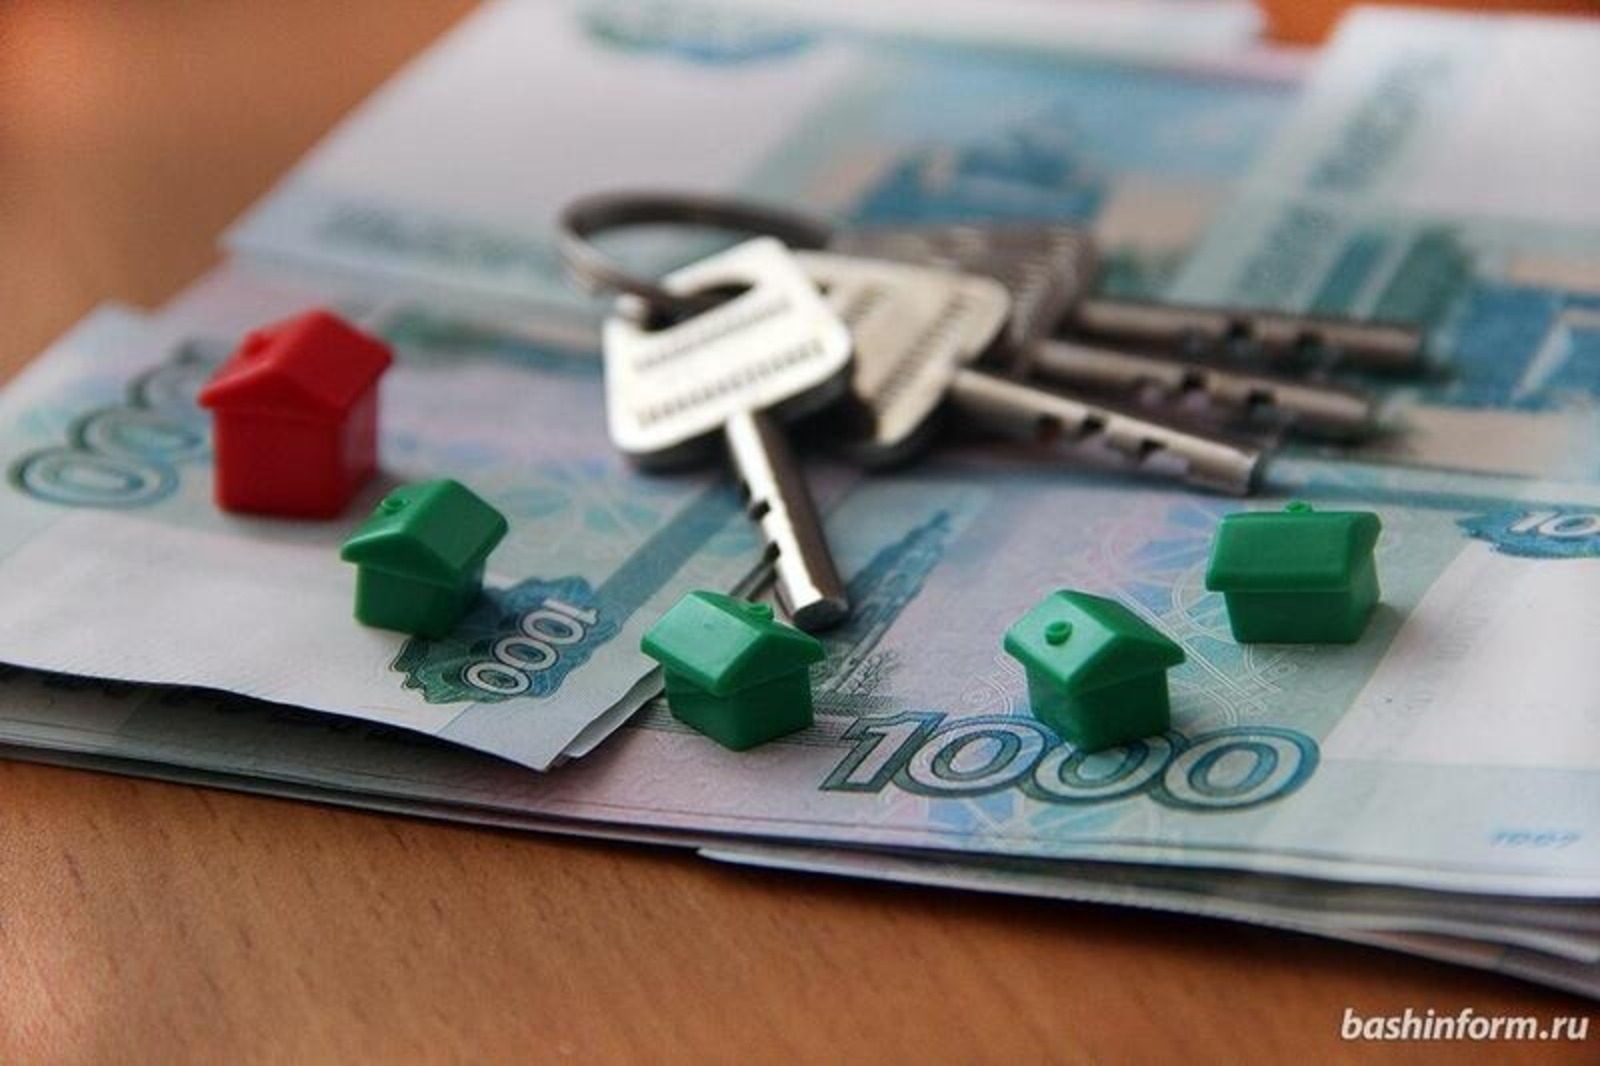 Продление семейной ипотеки в России до 2030 года поддержали